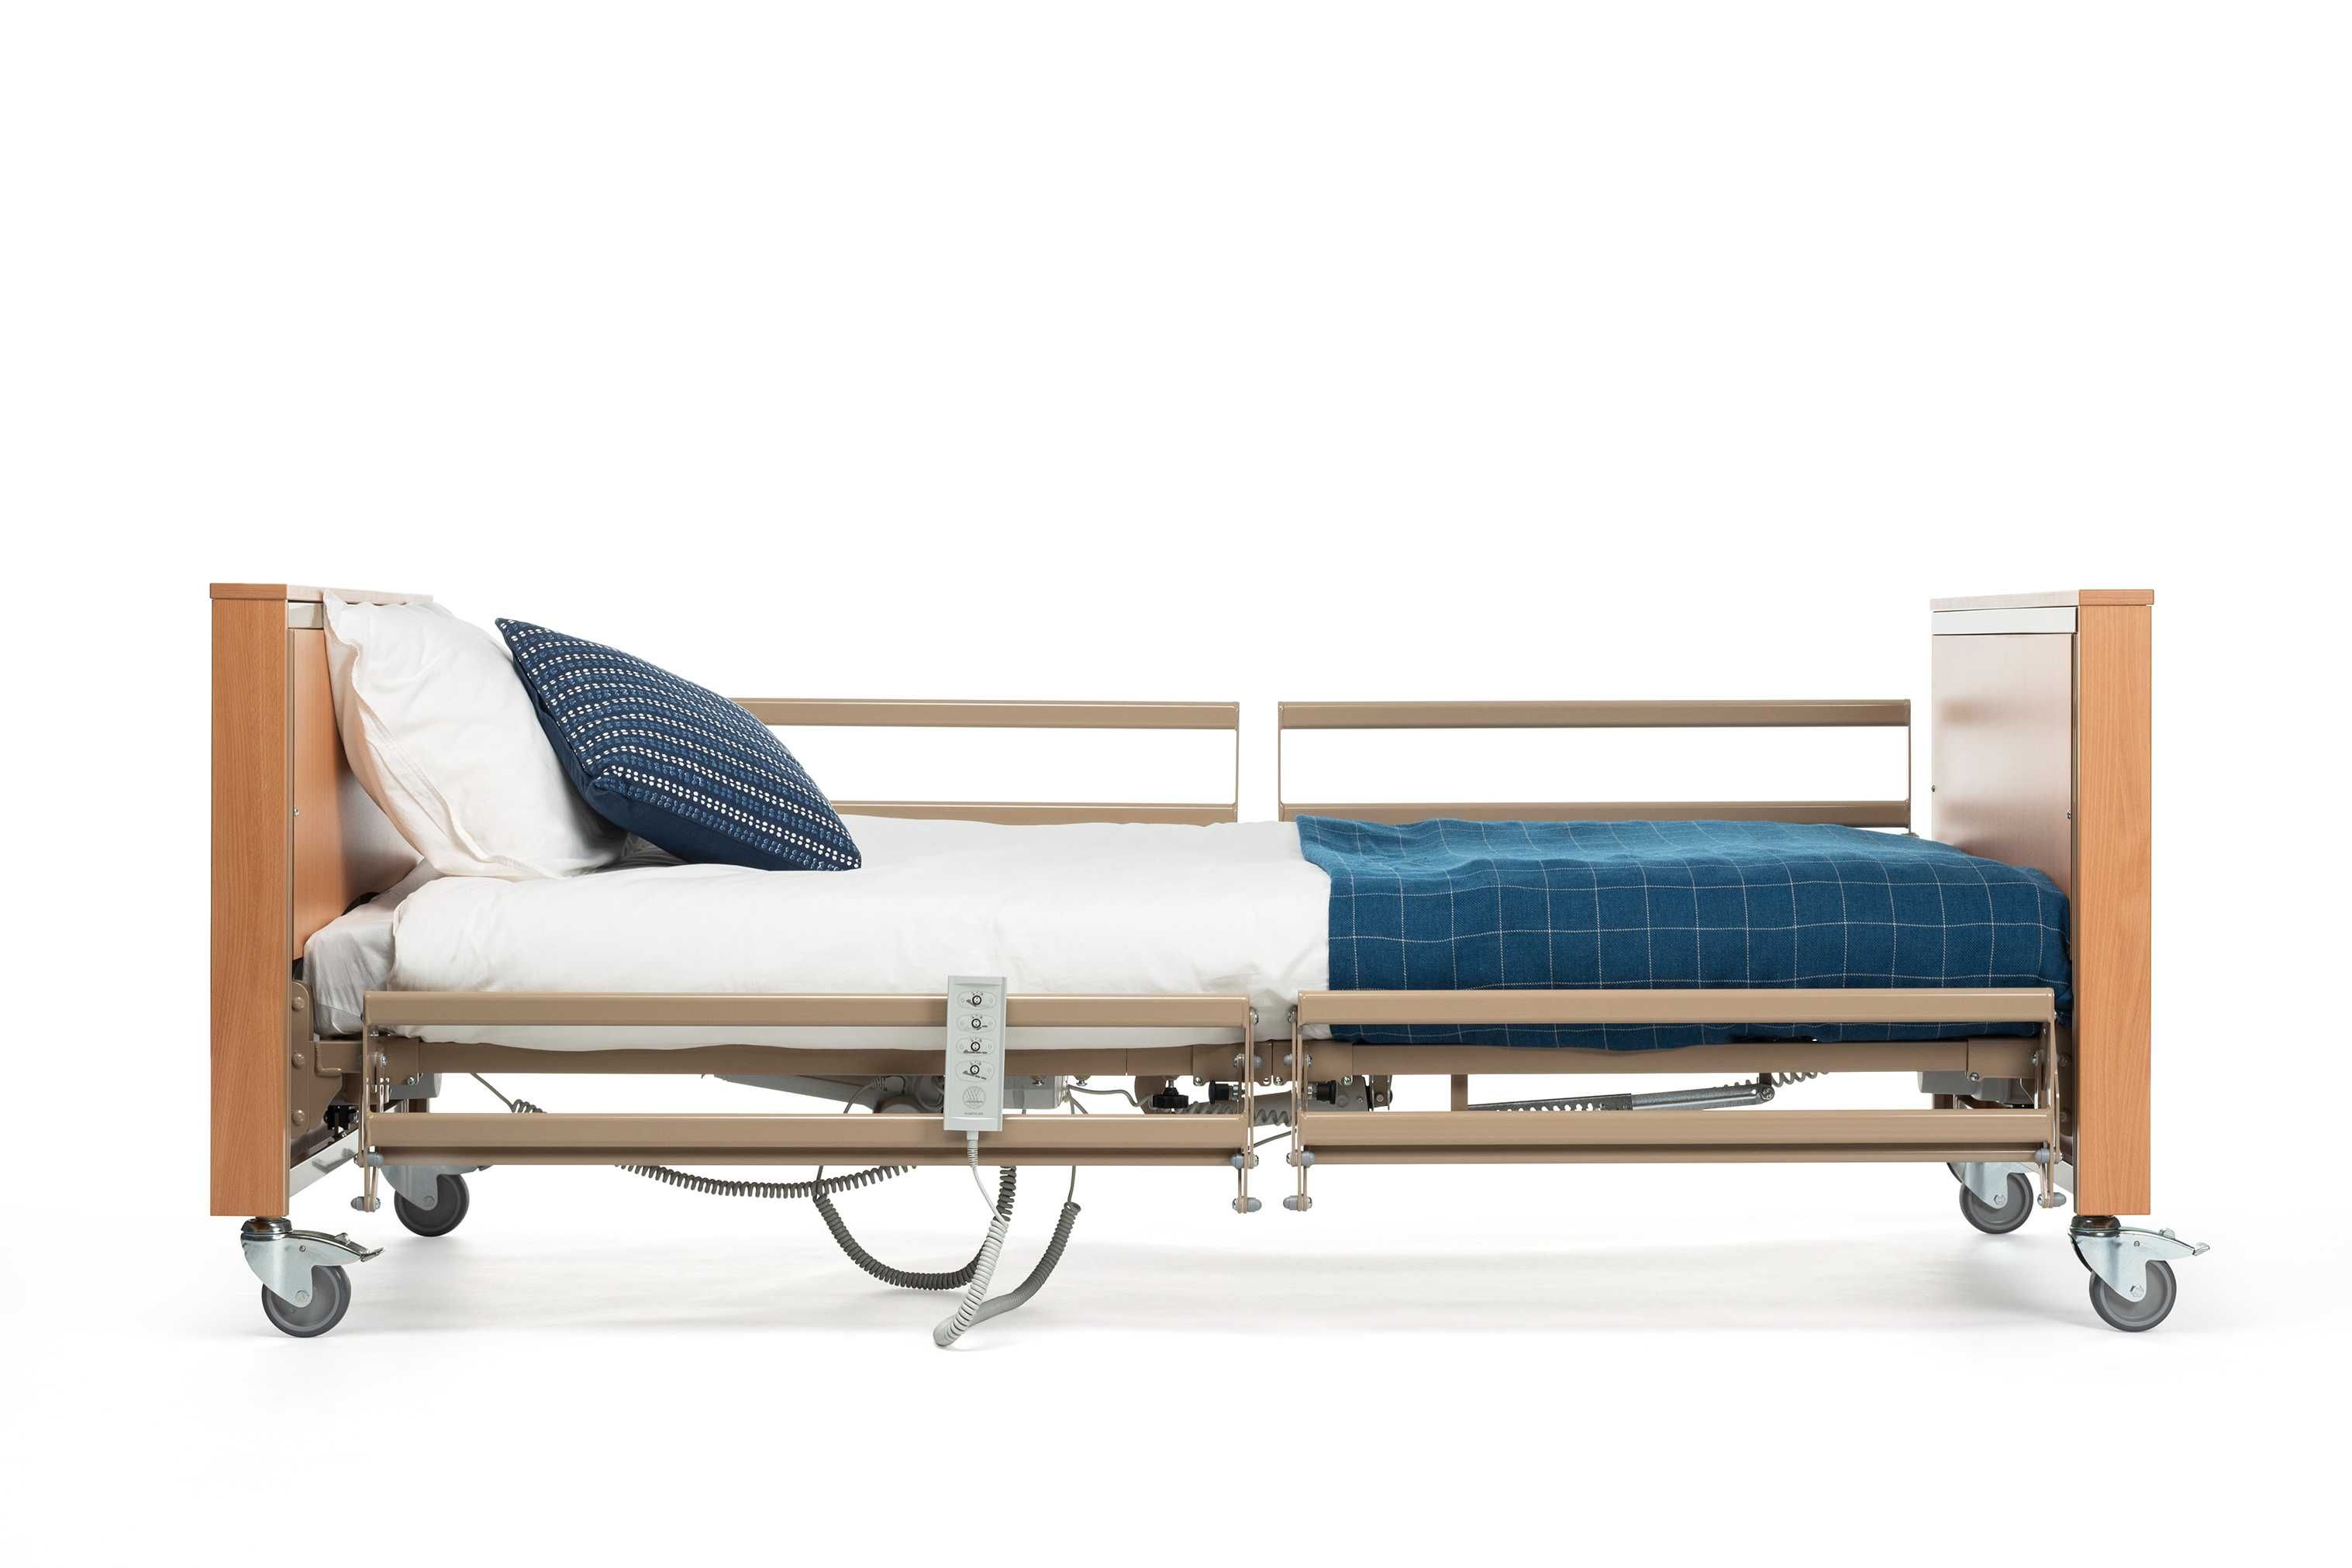 Nowe łóżko rehabilitacyjne Vermeiren Club możliwość dofinansowania!